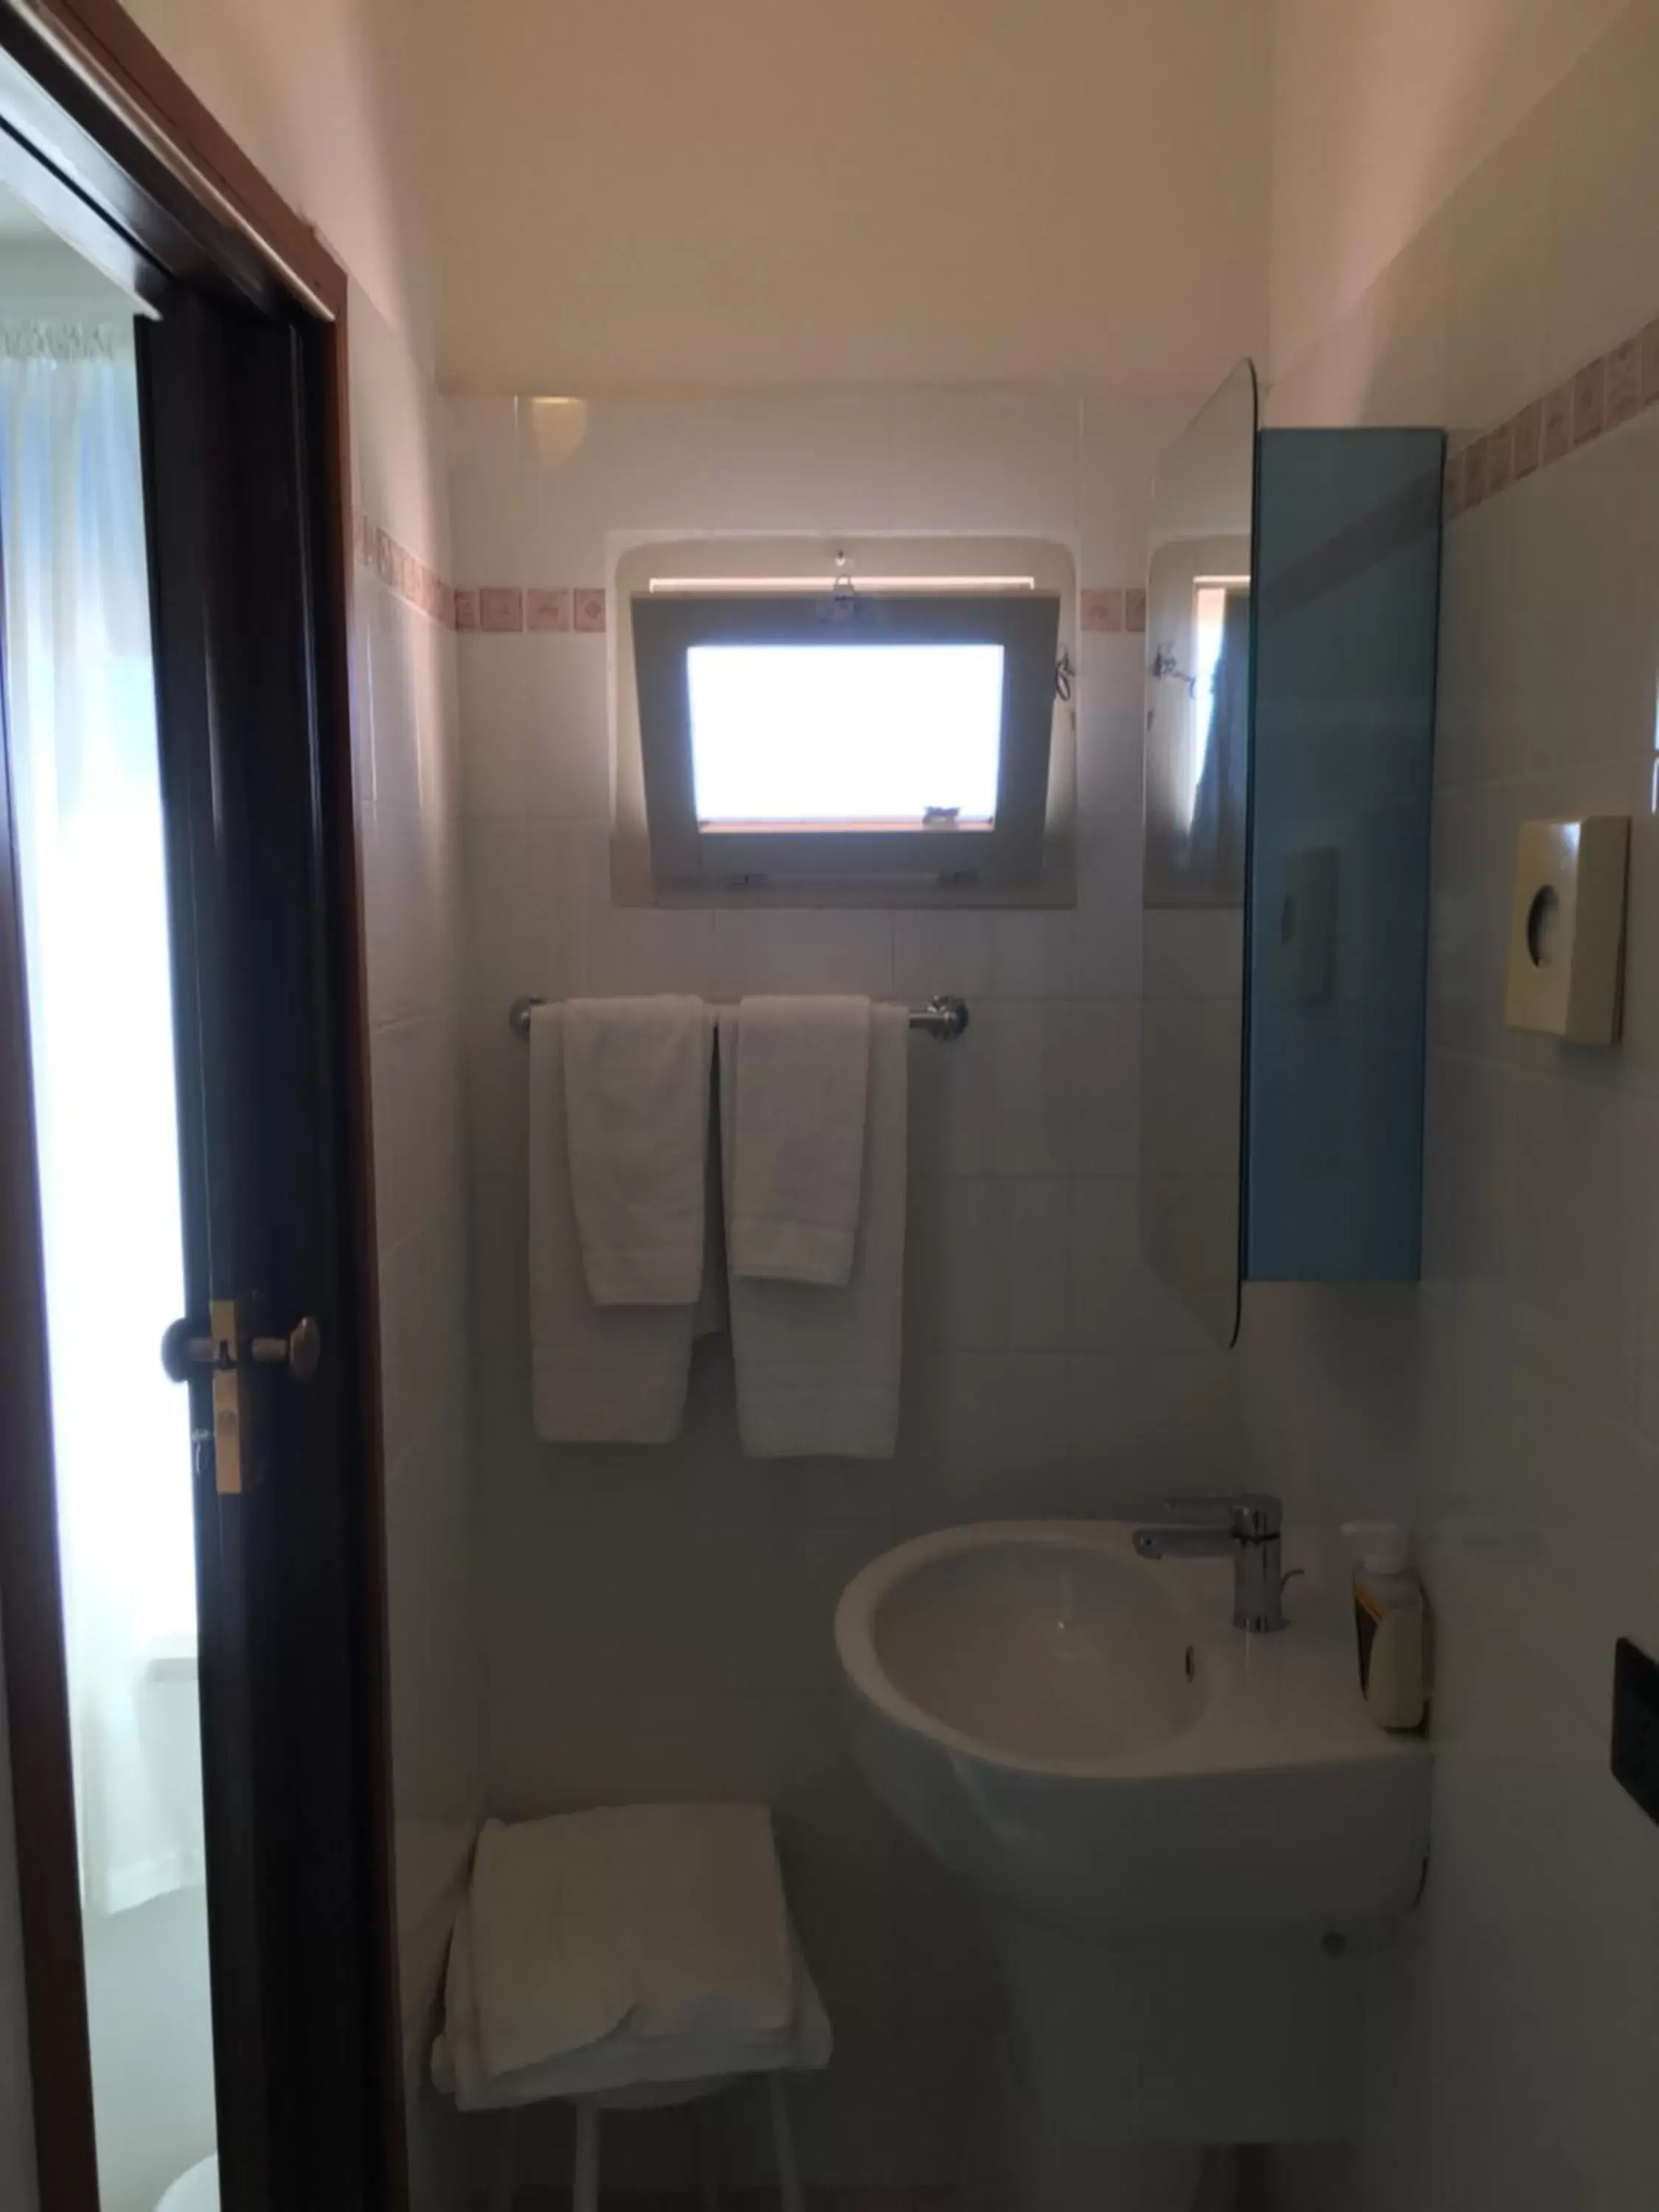 Bathroom in Dea Della Salute Hotel